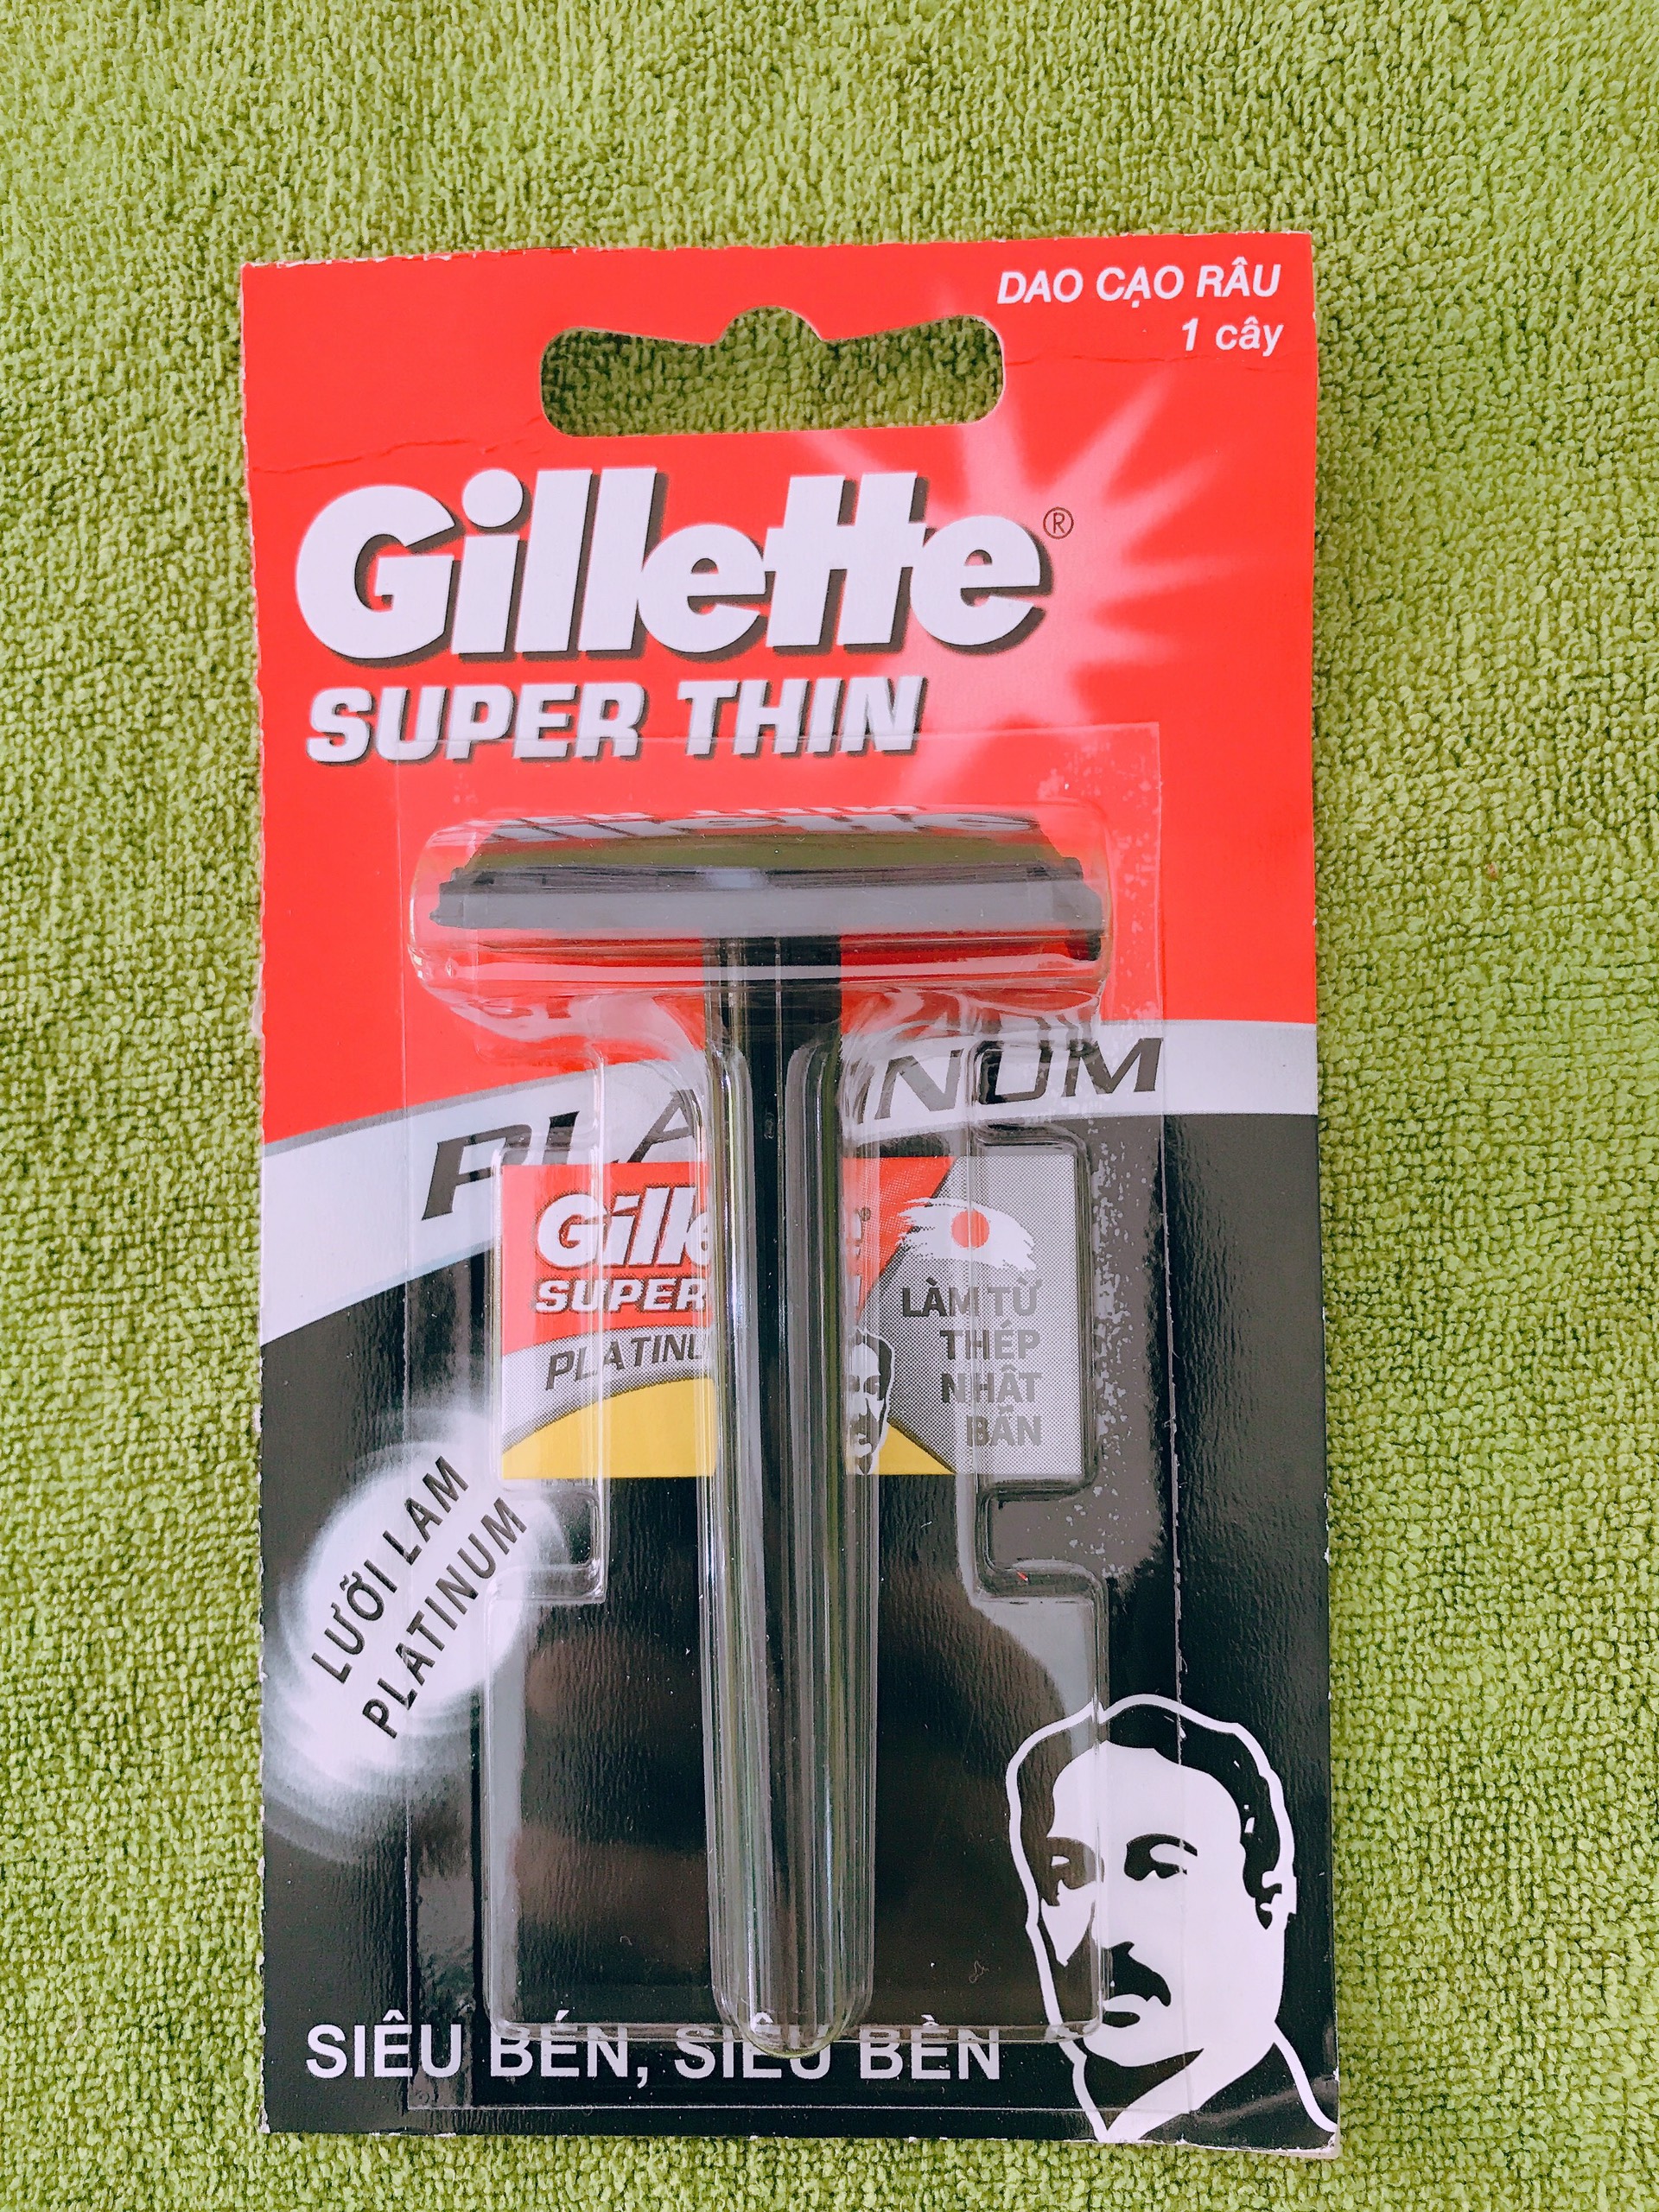 Bàn cạo râu GILLETTE cổ điển dùng bằng lưỡi lam  Tặng kèm 1 lưỡi lam